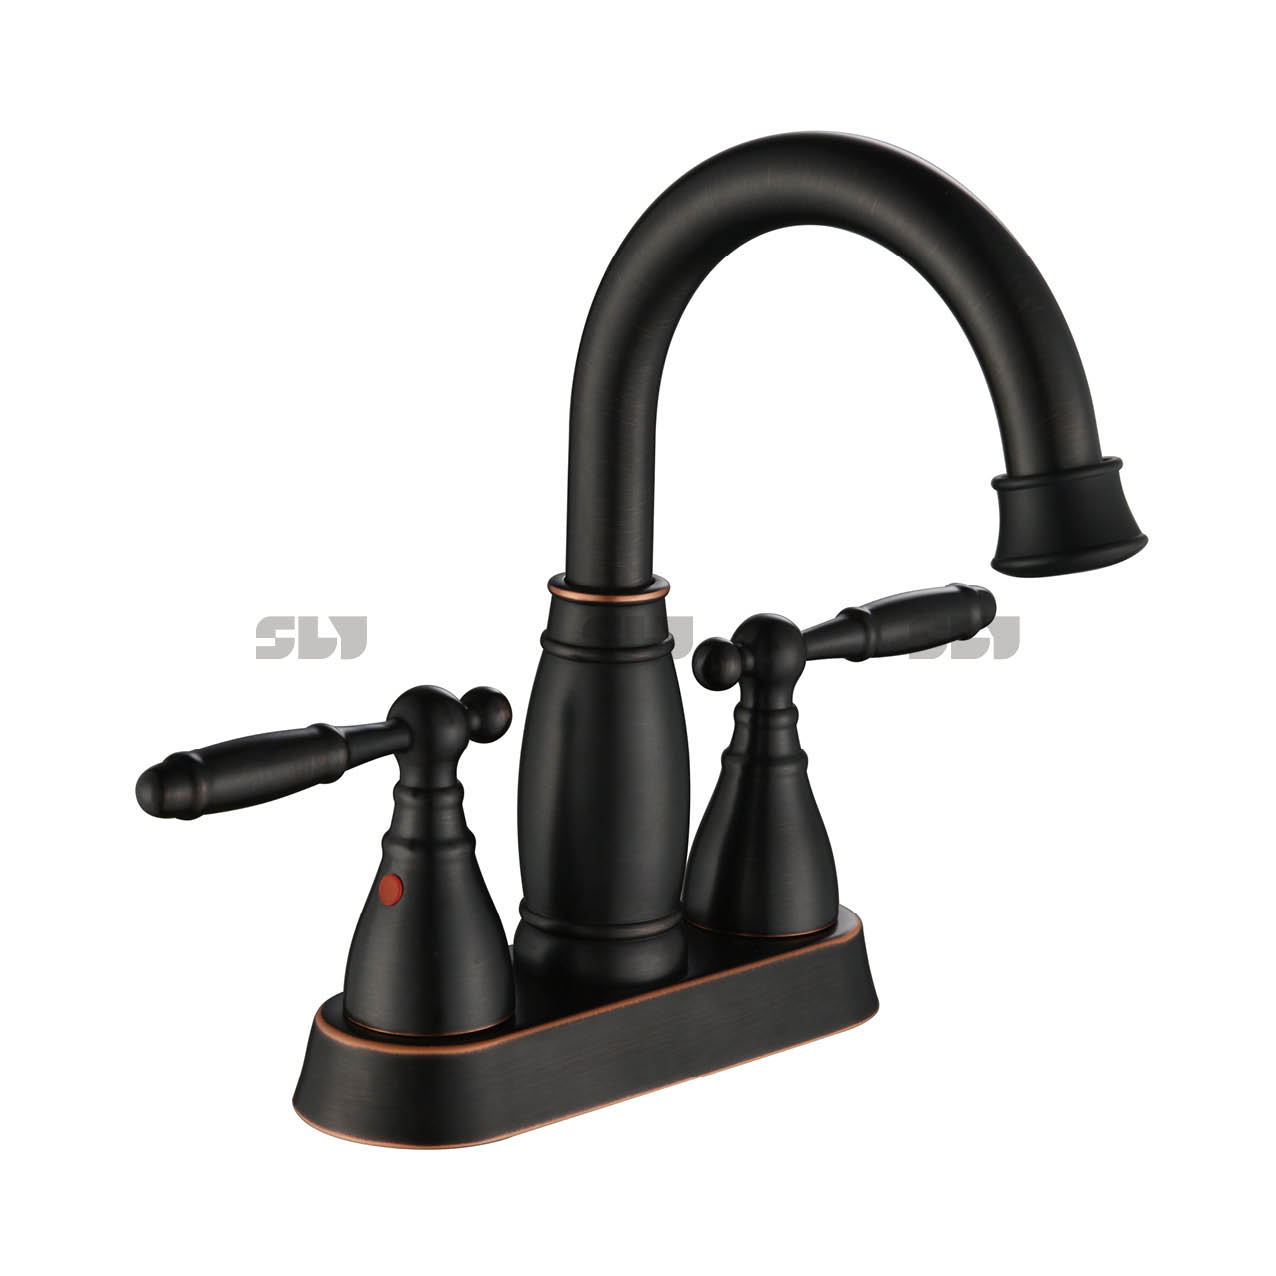 SLY Two Handle Face Basin Faucet Matte Black Centerset Lavatory Faucet 